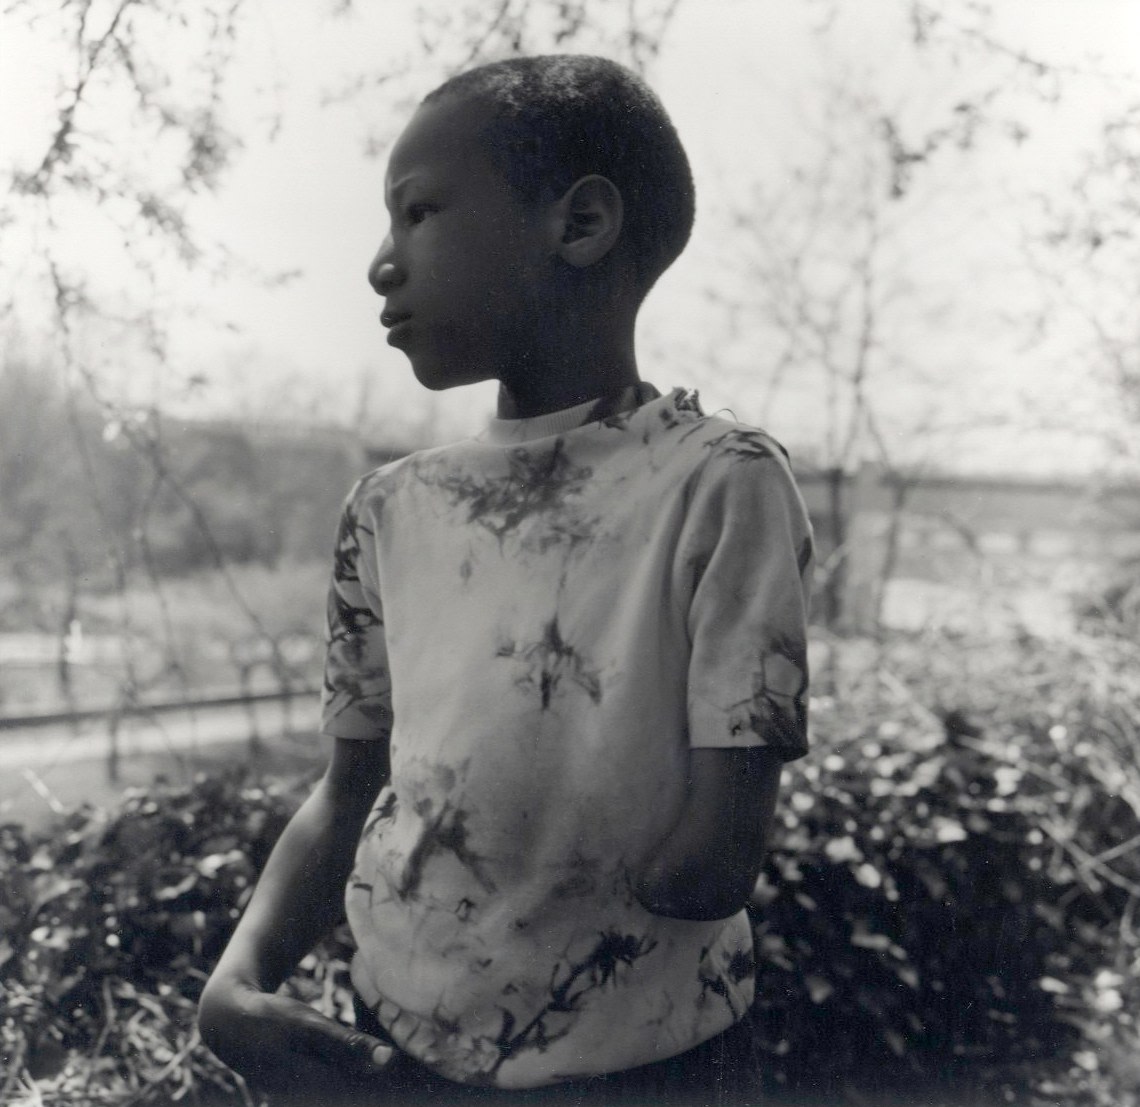 One-armed boy, 1976